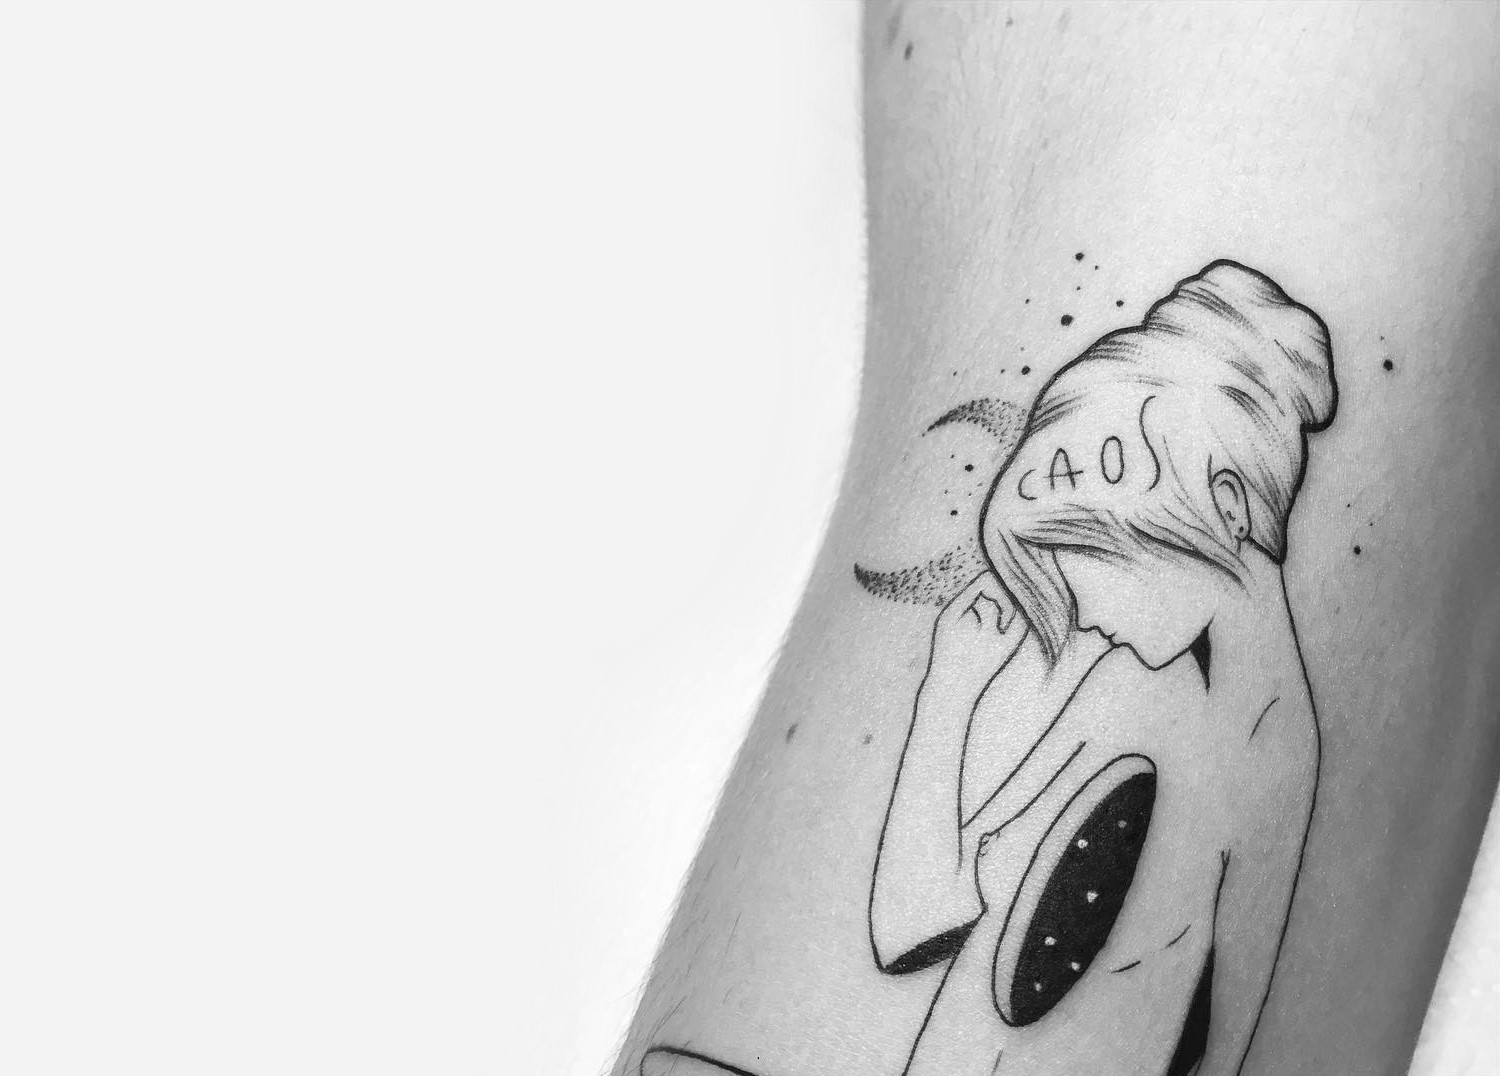 Brusimoes caos tattoo close up